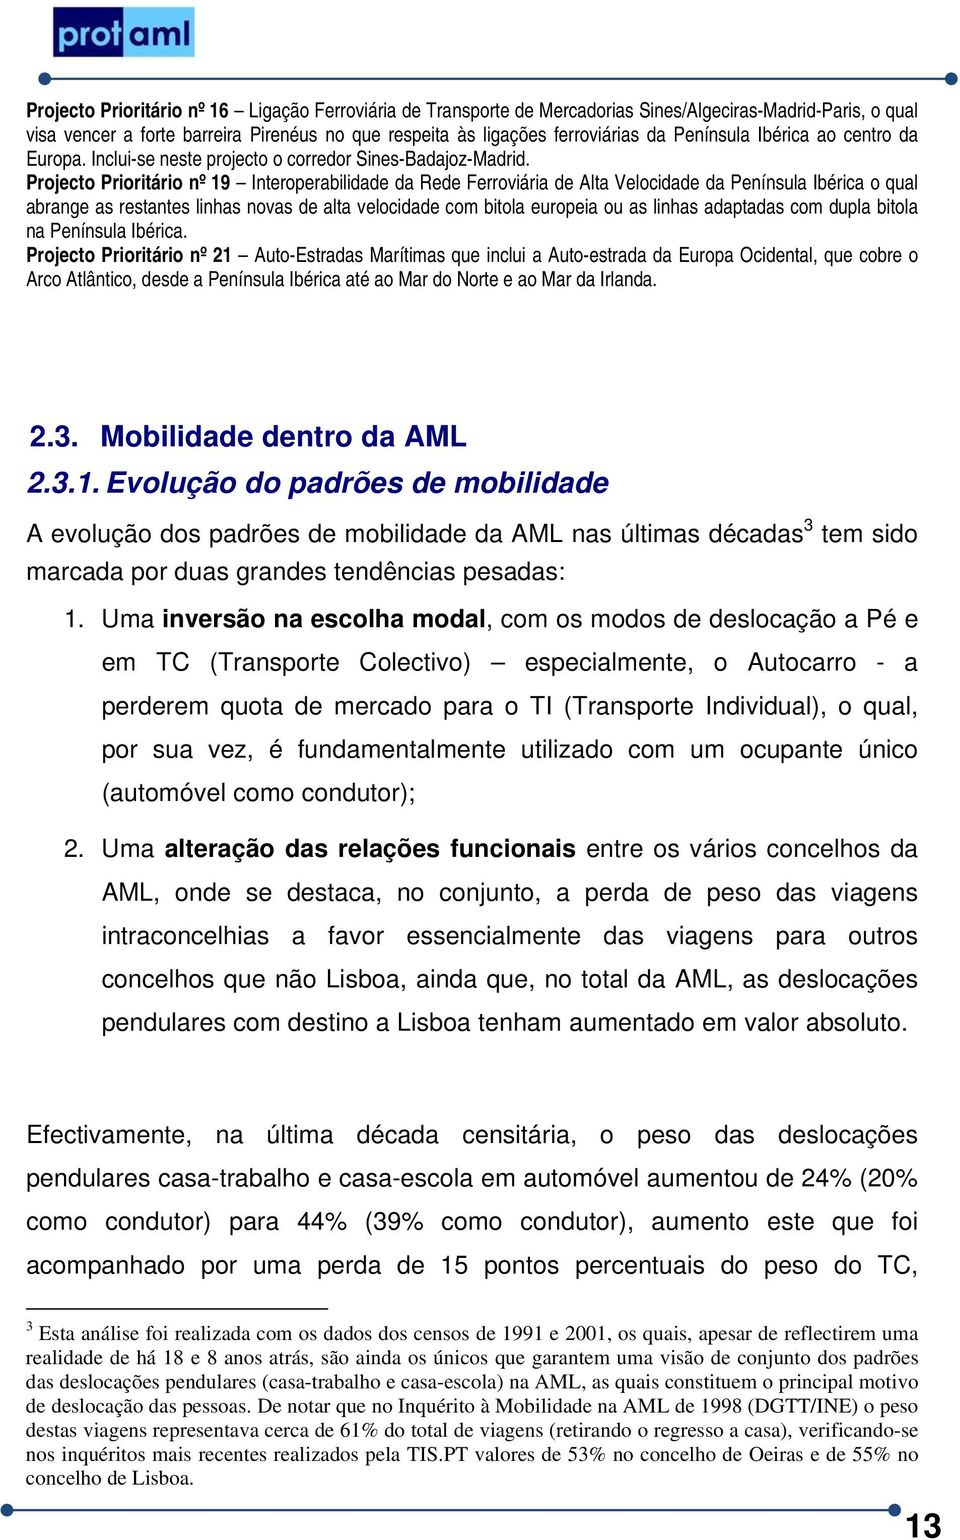 Projecto Prioritário nº 19 Interoperabilidade da Rede Ferroviária de Alta Velocidade da Península Ibérica o qual abrange as restantes linhas novas de alta velocidade com bitola europeia ou as linhas